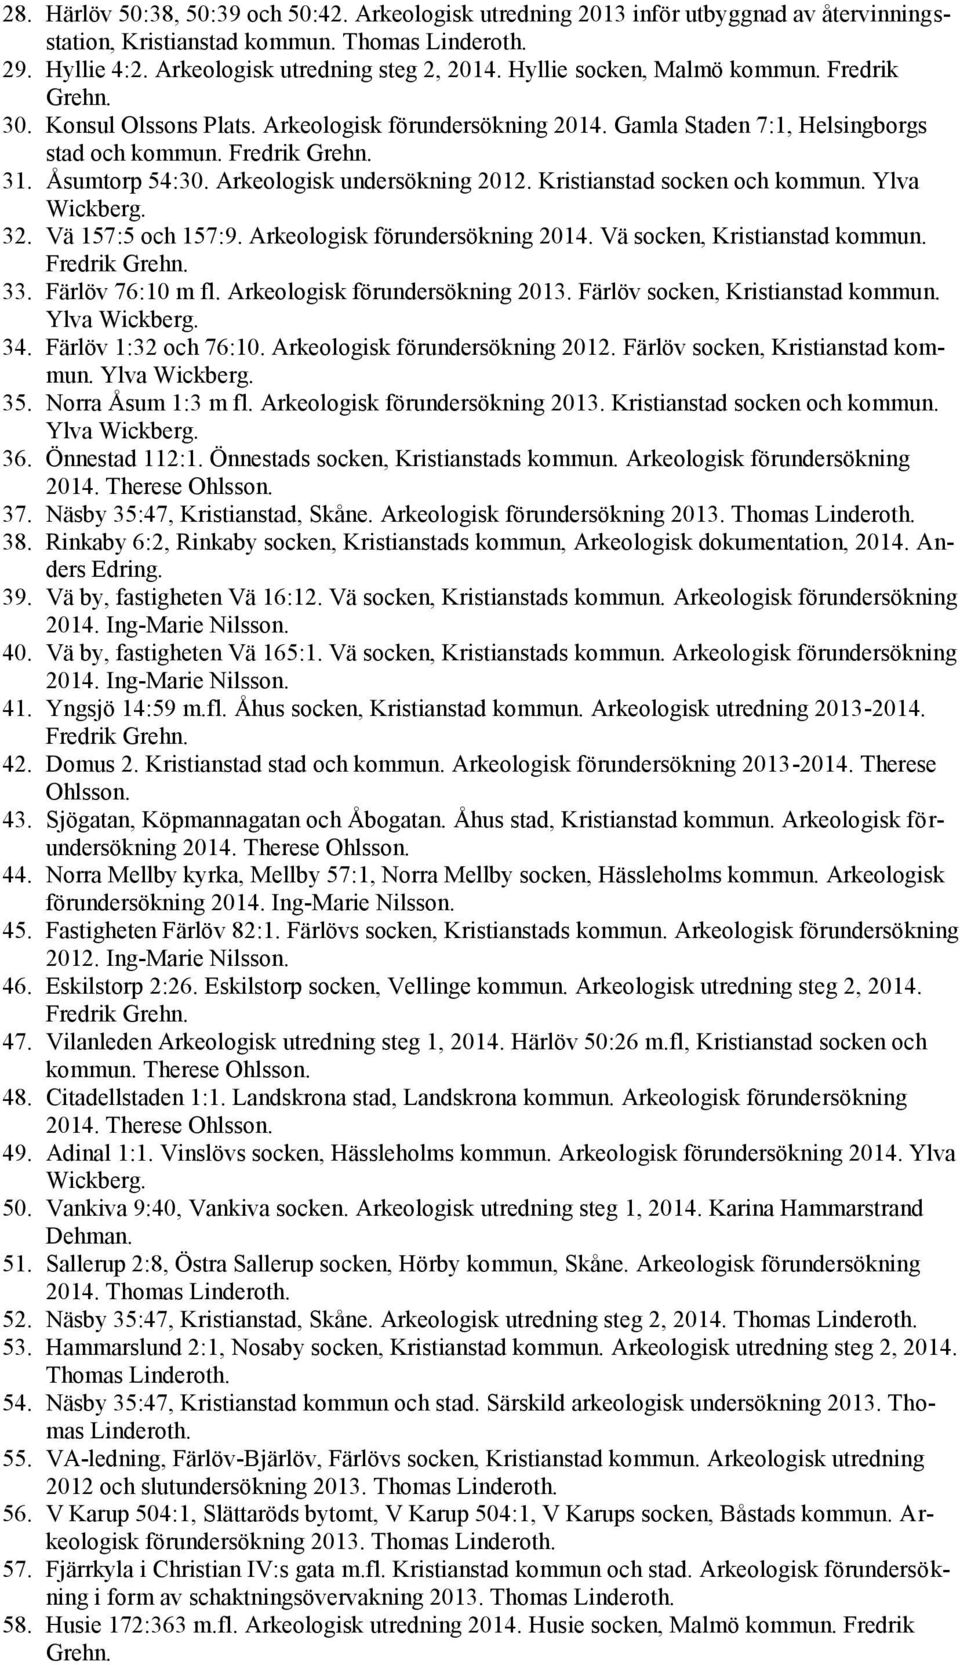 Arkeologisk undersökning 2012. Kristianstad socken och kommun. Ylva Wickberg. 32. Vä 157:5 och 157:9. Arkeologisk förundersökning 2014. Vä socken, Kristianstad kommun. Fredrik Grehn. 33.